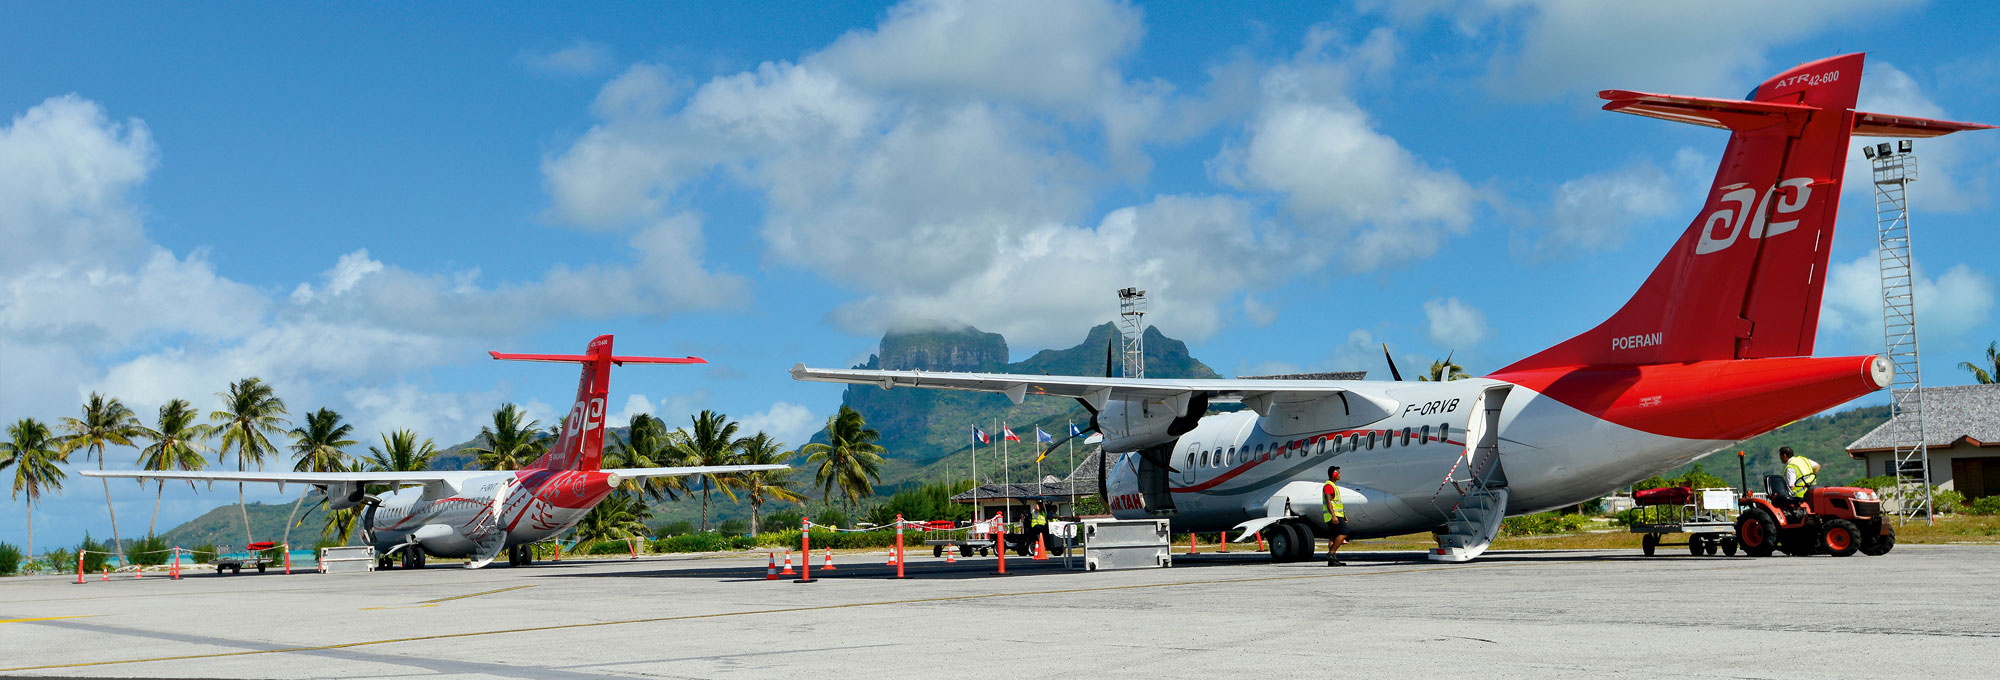 ATR Air Tahiti sur tarmac de Bora Bora - © P. Bacchet